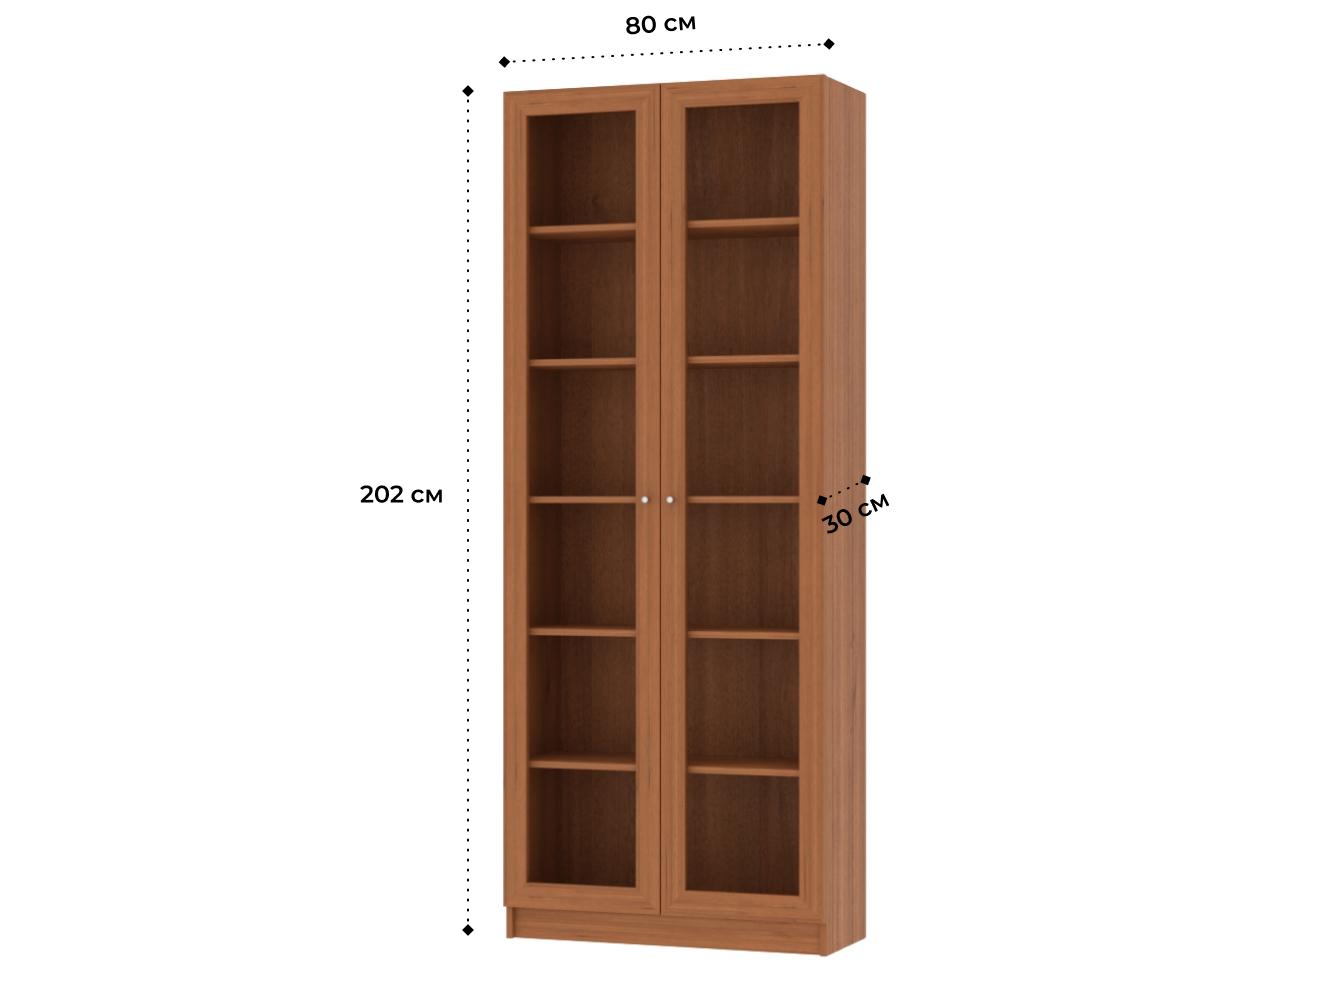  Книжный шкаф Билли 336 walnut guarneri ИКЕА (IKEA) изображение товара